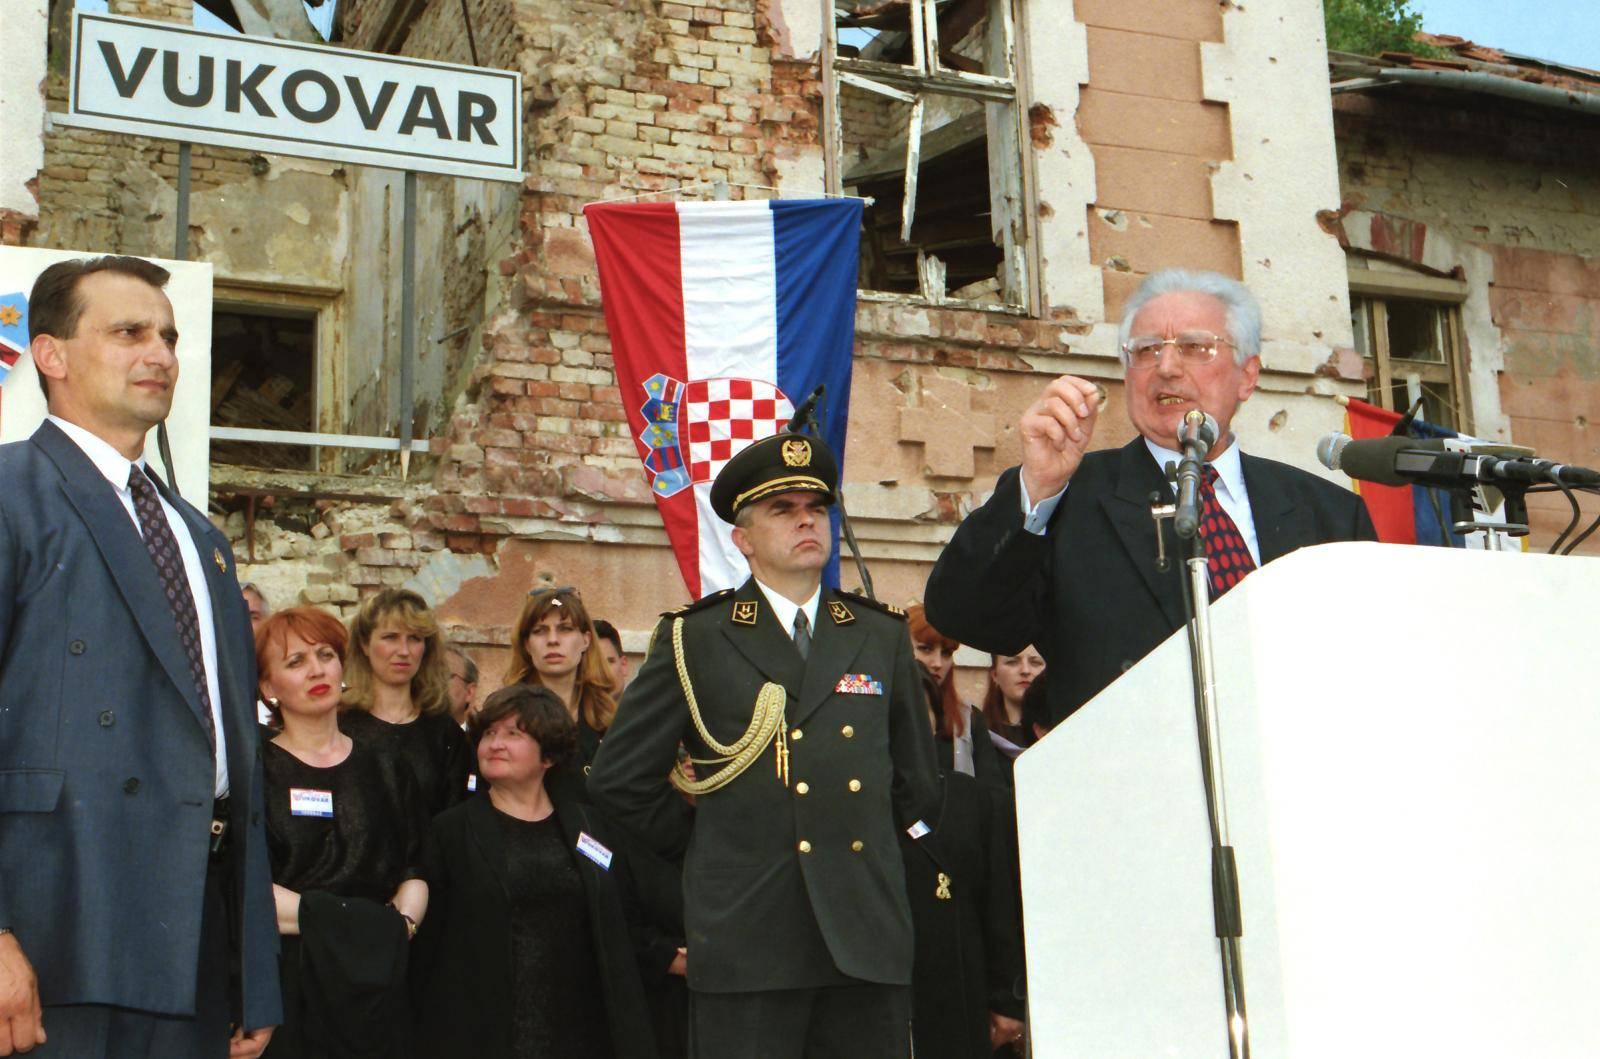 Povratak u napaćeni grad heroj: Vlak mira krenuo je za Vukovar, pjevalo se i klicalo slobodi...